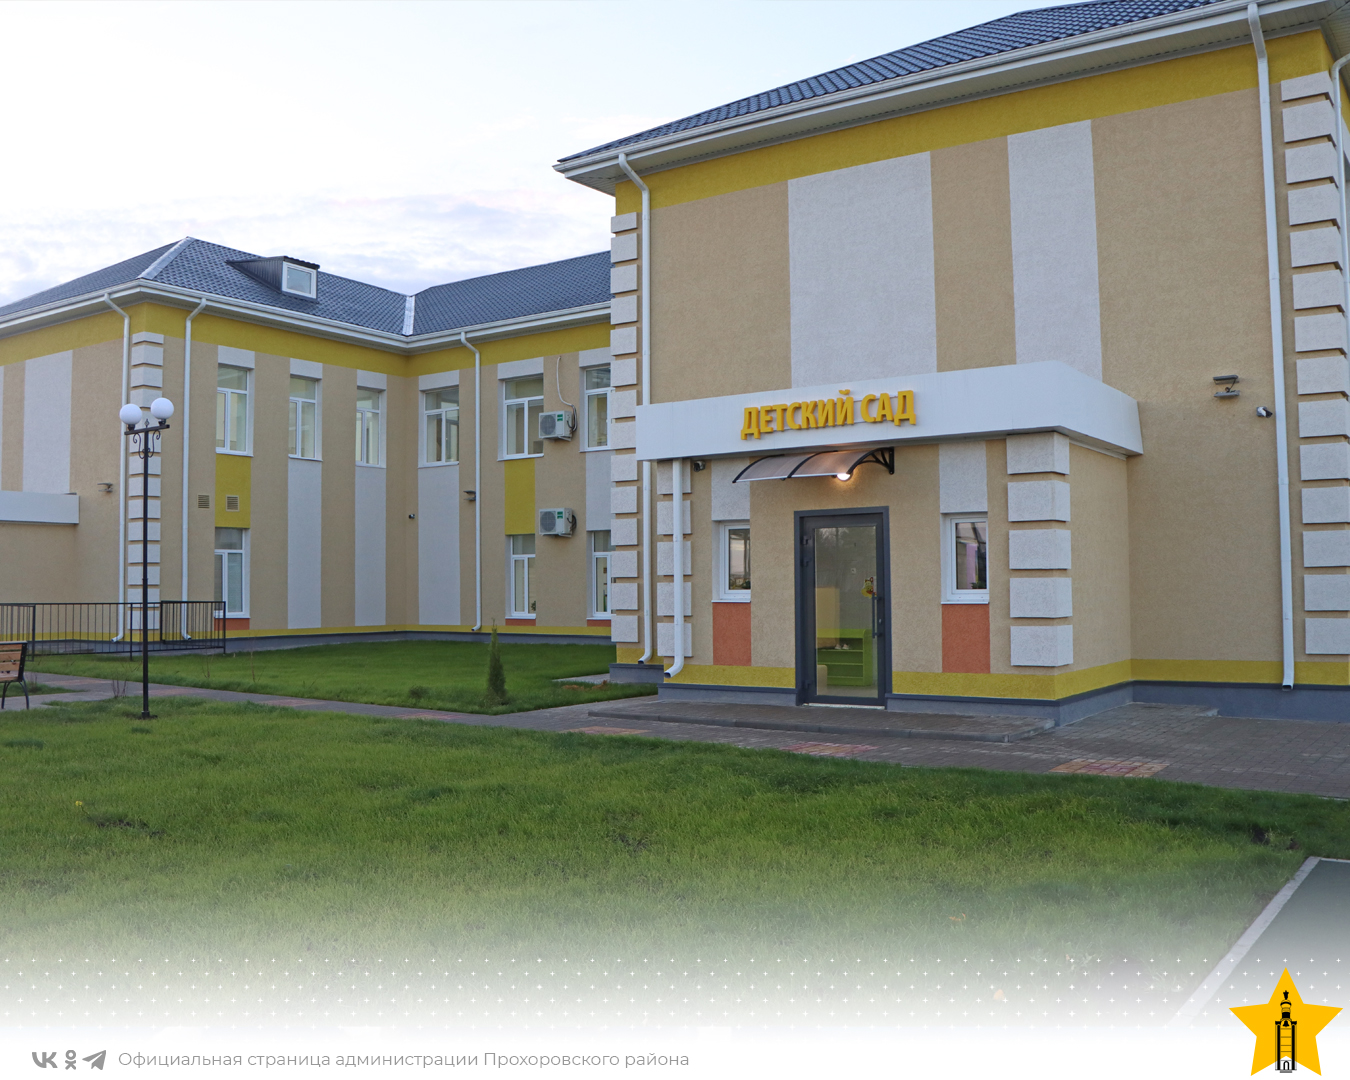 Новая школа откроет двери. Фото школы в селе Шахово Донецкой области.